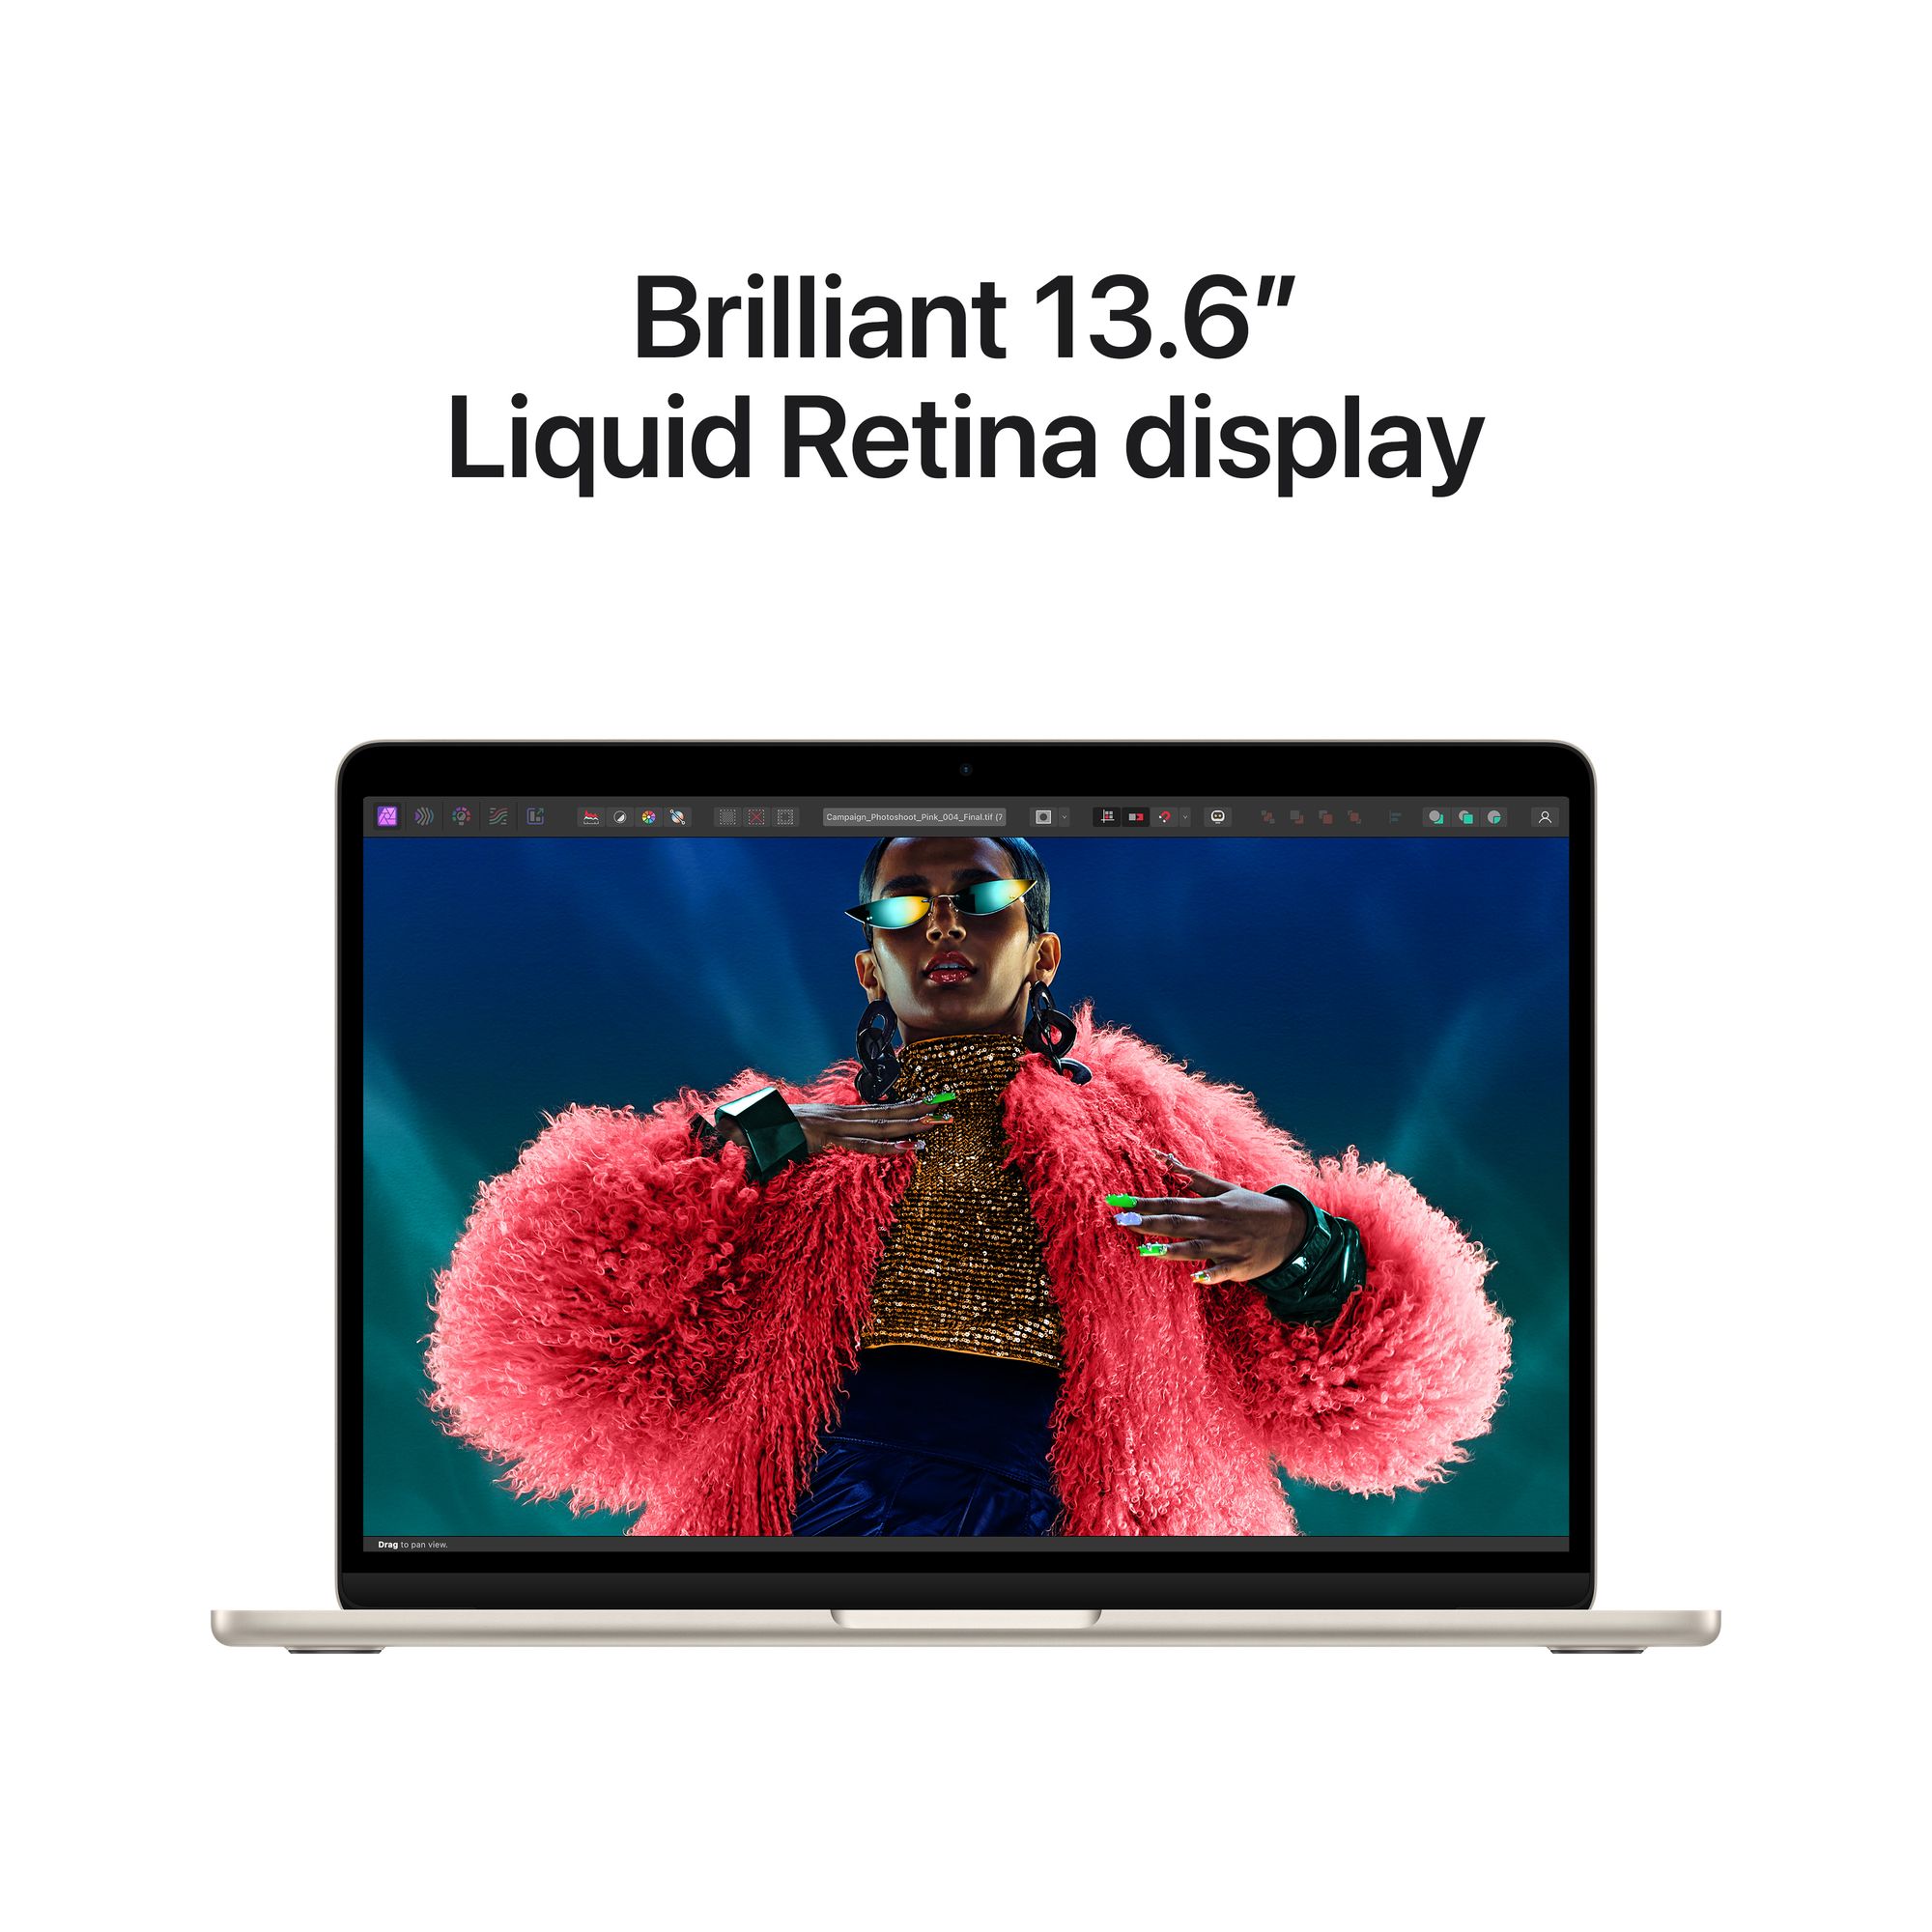 13-inch MacBook Air: Apple M3 chip 8-core CPU, 10-core GPU, 8GB, 512GB SSD - csillagfény